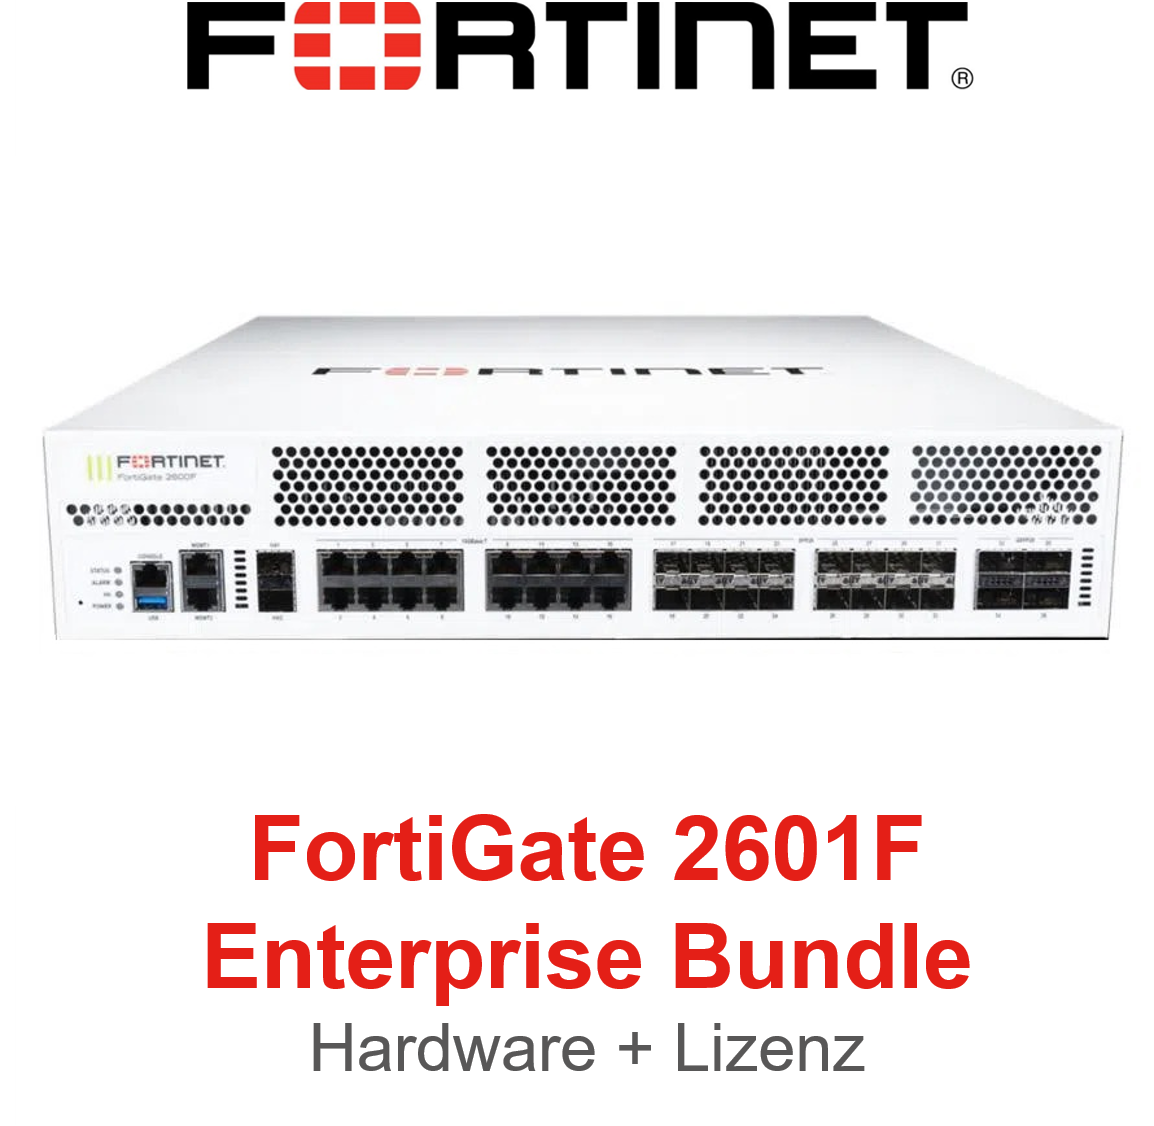 Fortinet FortiGate 2601F - Enterprise Bundle (Hardware + Lizenz)